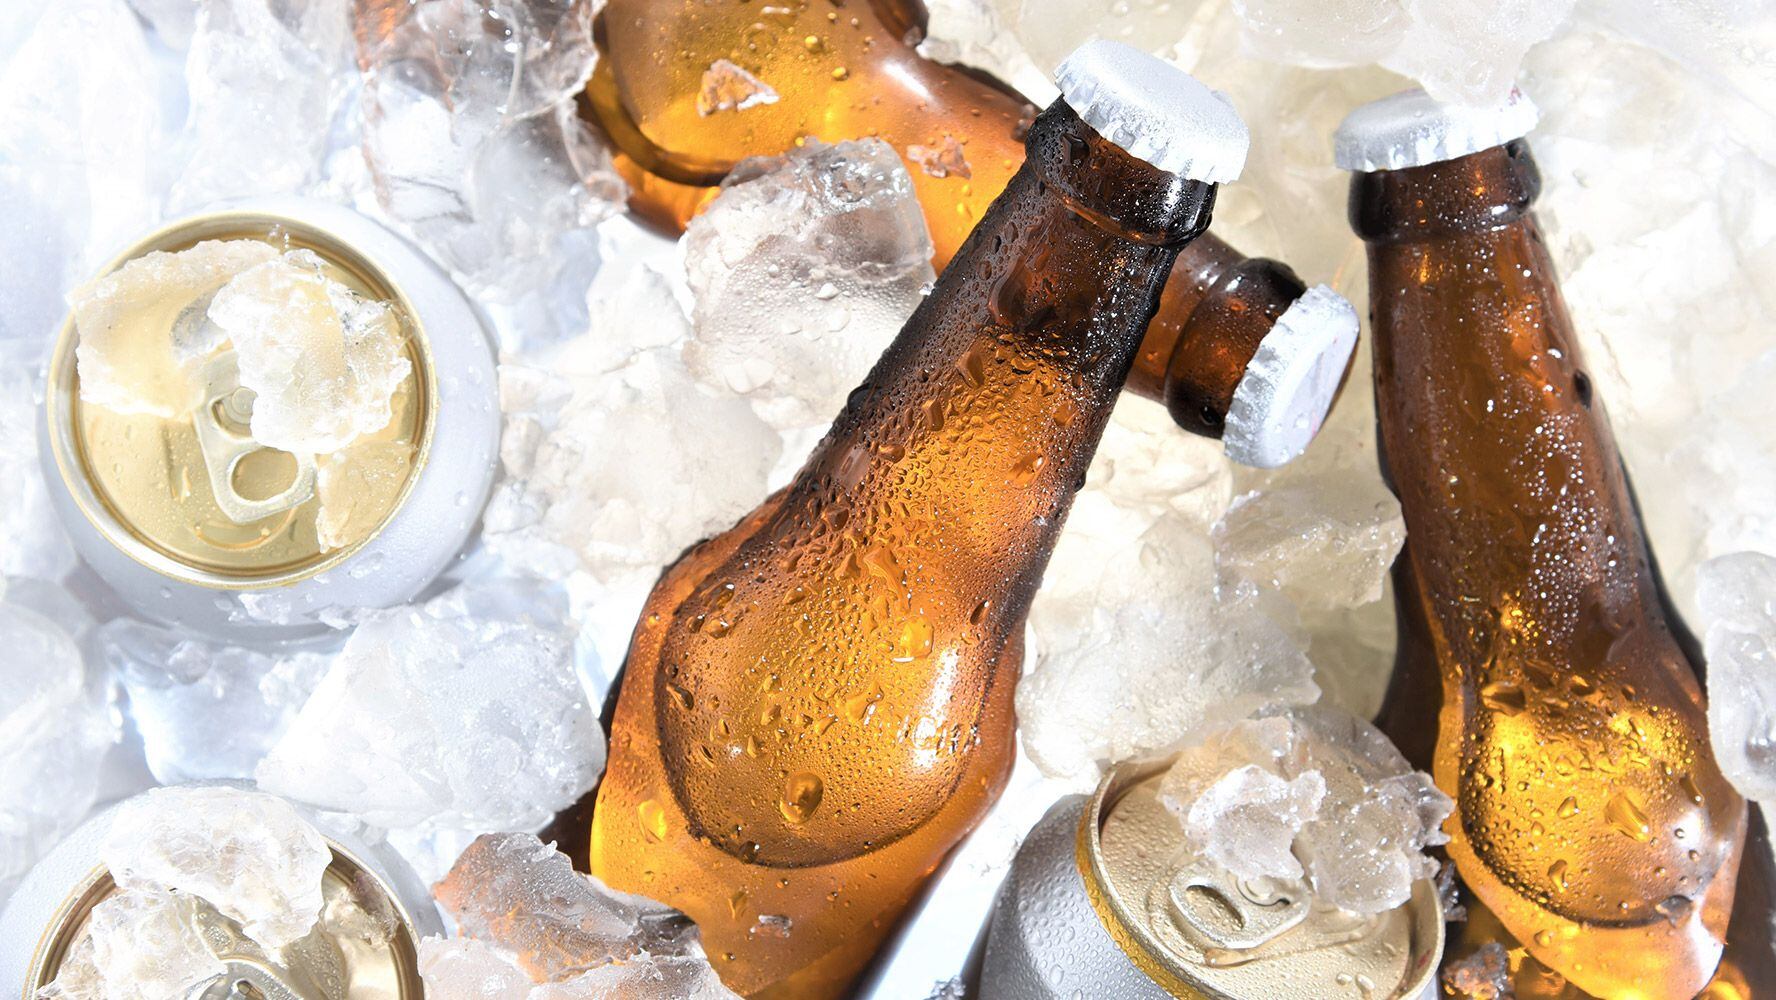 La cerveza en lata o vidrio conserva de forma diferente la temperatura. (Foto: Shutterstock).